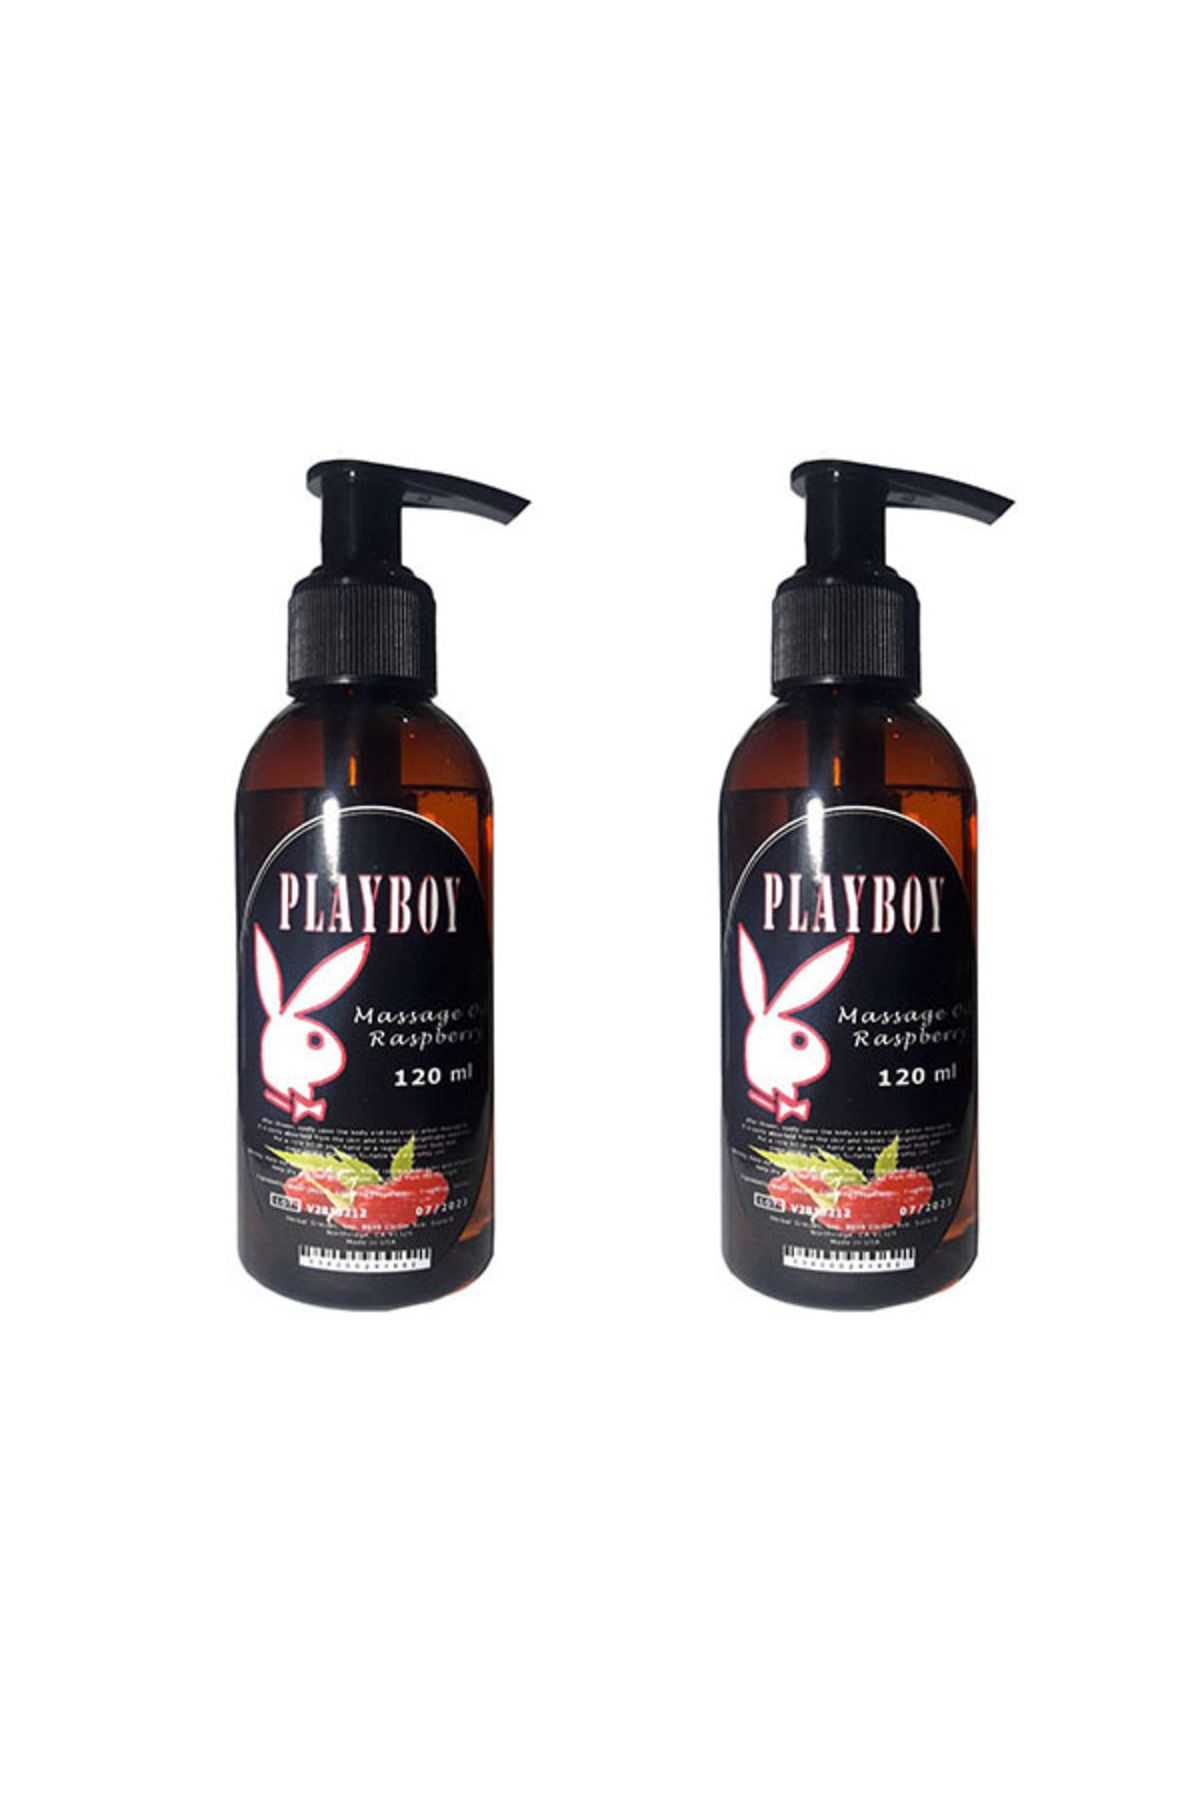 Playboy Ahududu Aromalı Masaj Yağı 120ml x 2 ad. / Raspberry Flavored Massage Oil